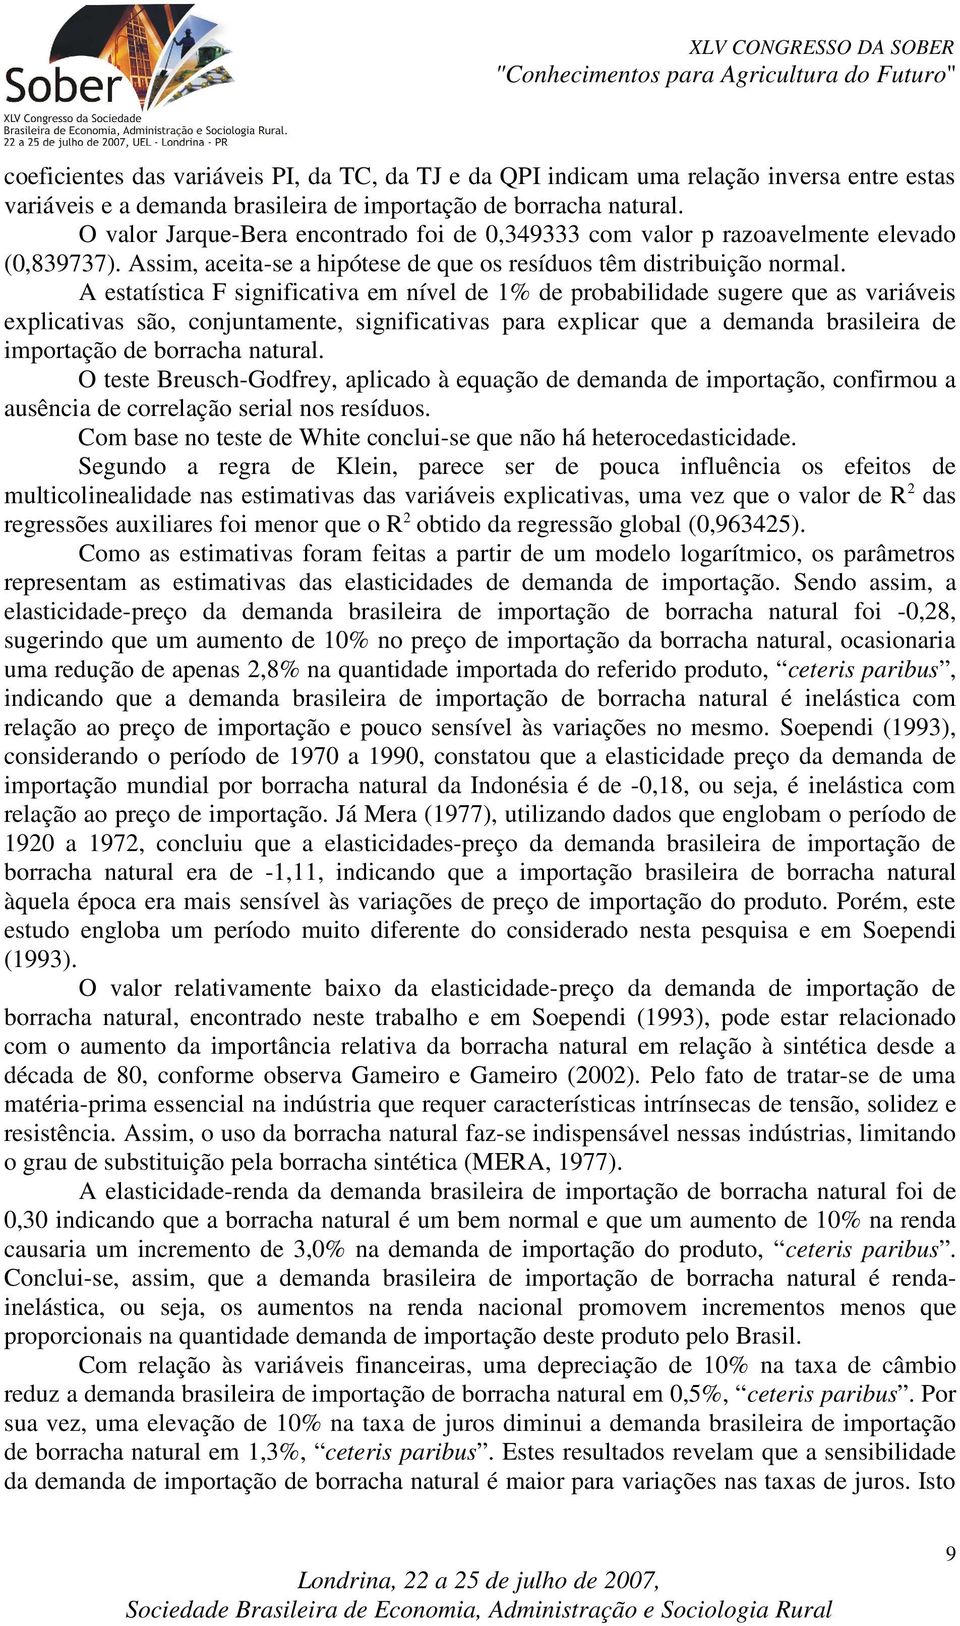 A esaísica F significaiva em nível de 1% de probabilidade sugere que as variáveis explicaivas são, conjunamene, significaivas para explicar que a demanda brasileira de imporação de borracha naural.